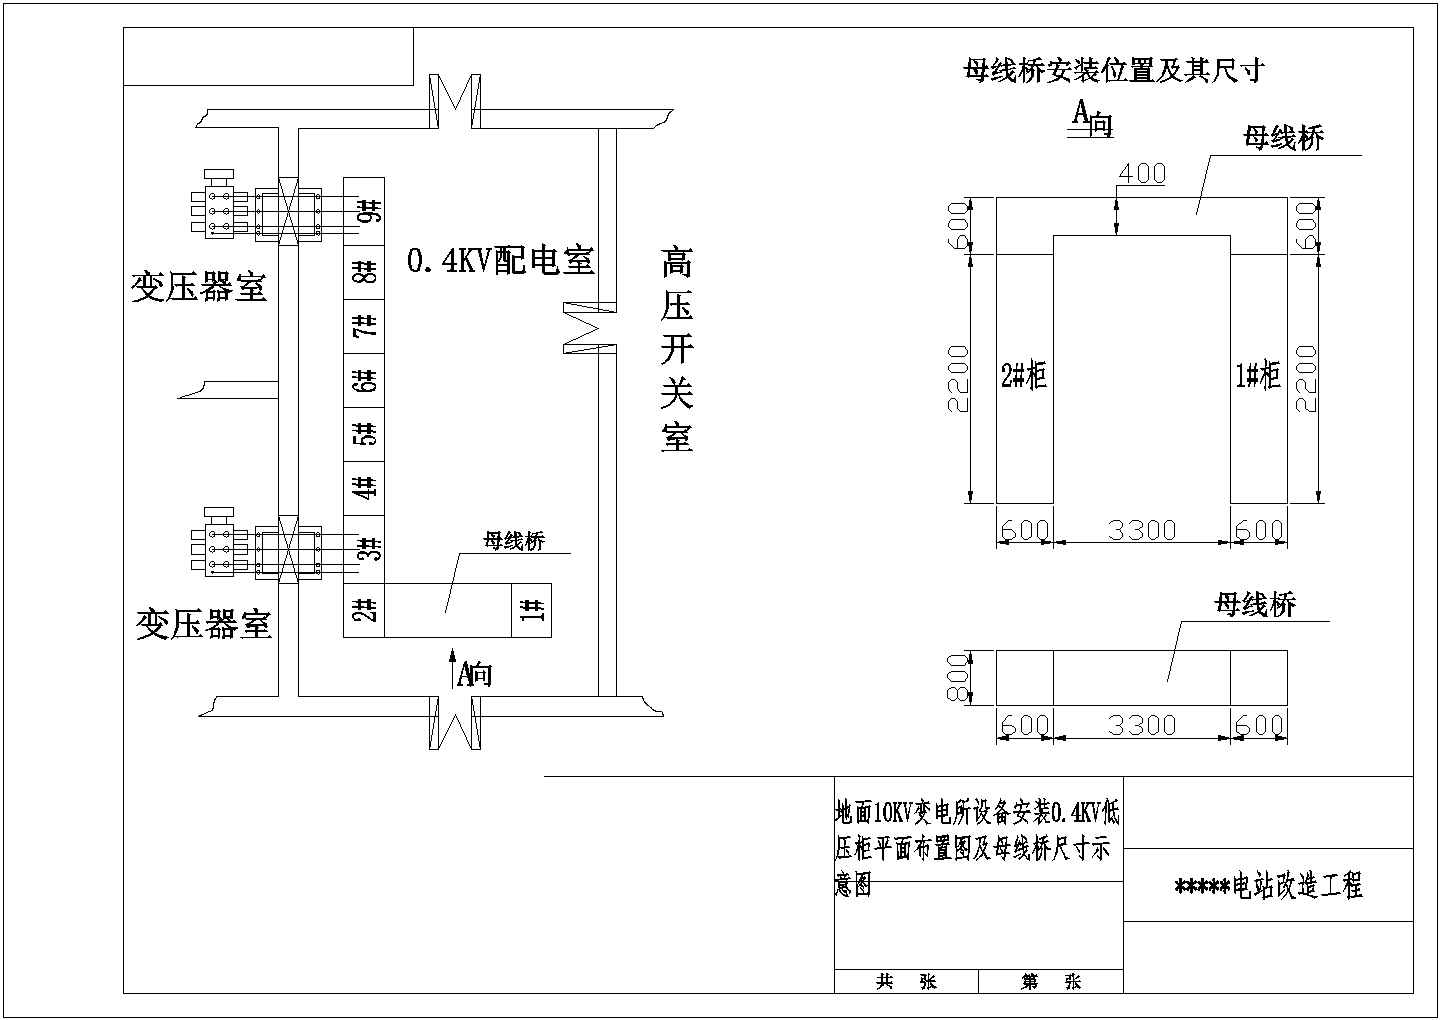 【江苏省】10KV变电所0.4KV低压柜布置图